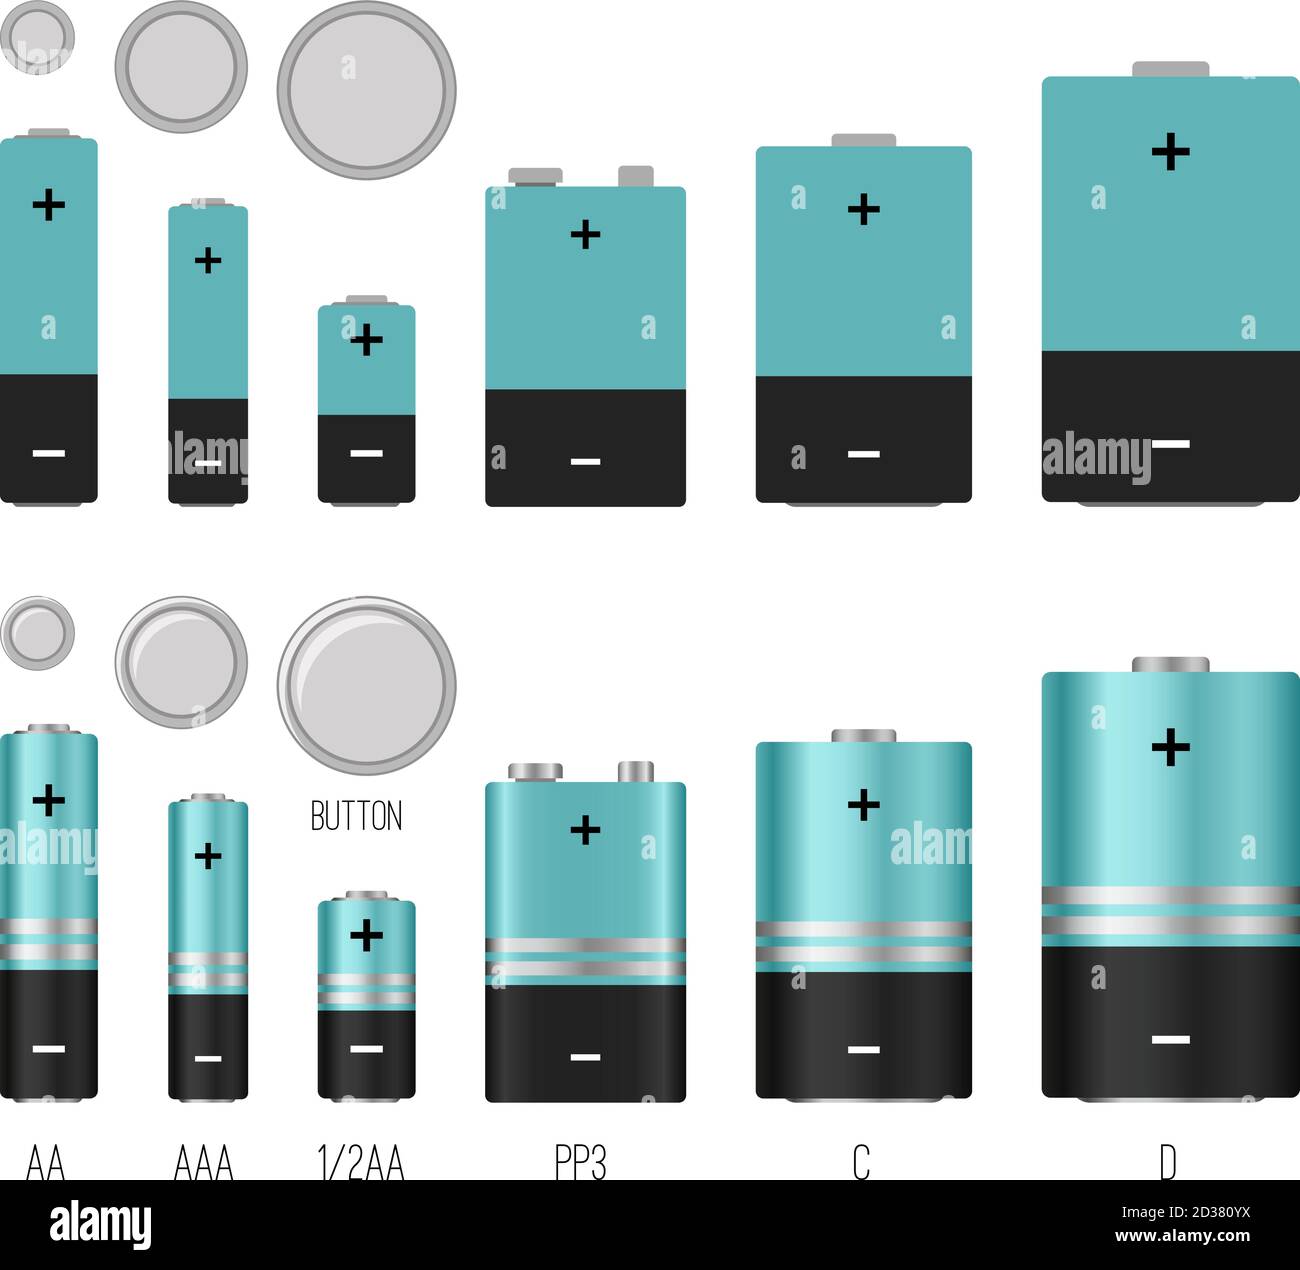 Batteries4pro - Tamaños y formatos de pilas y baterías